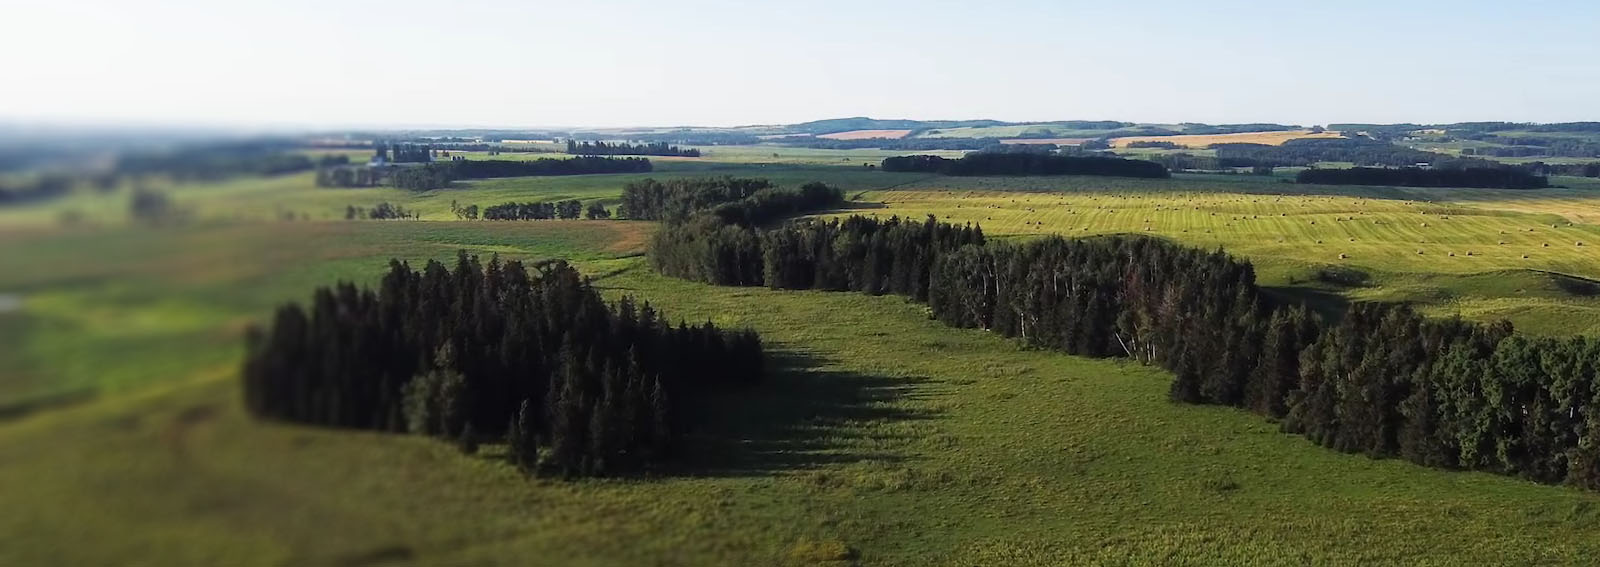 Aerial view of a farm across the prairies.